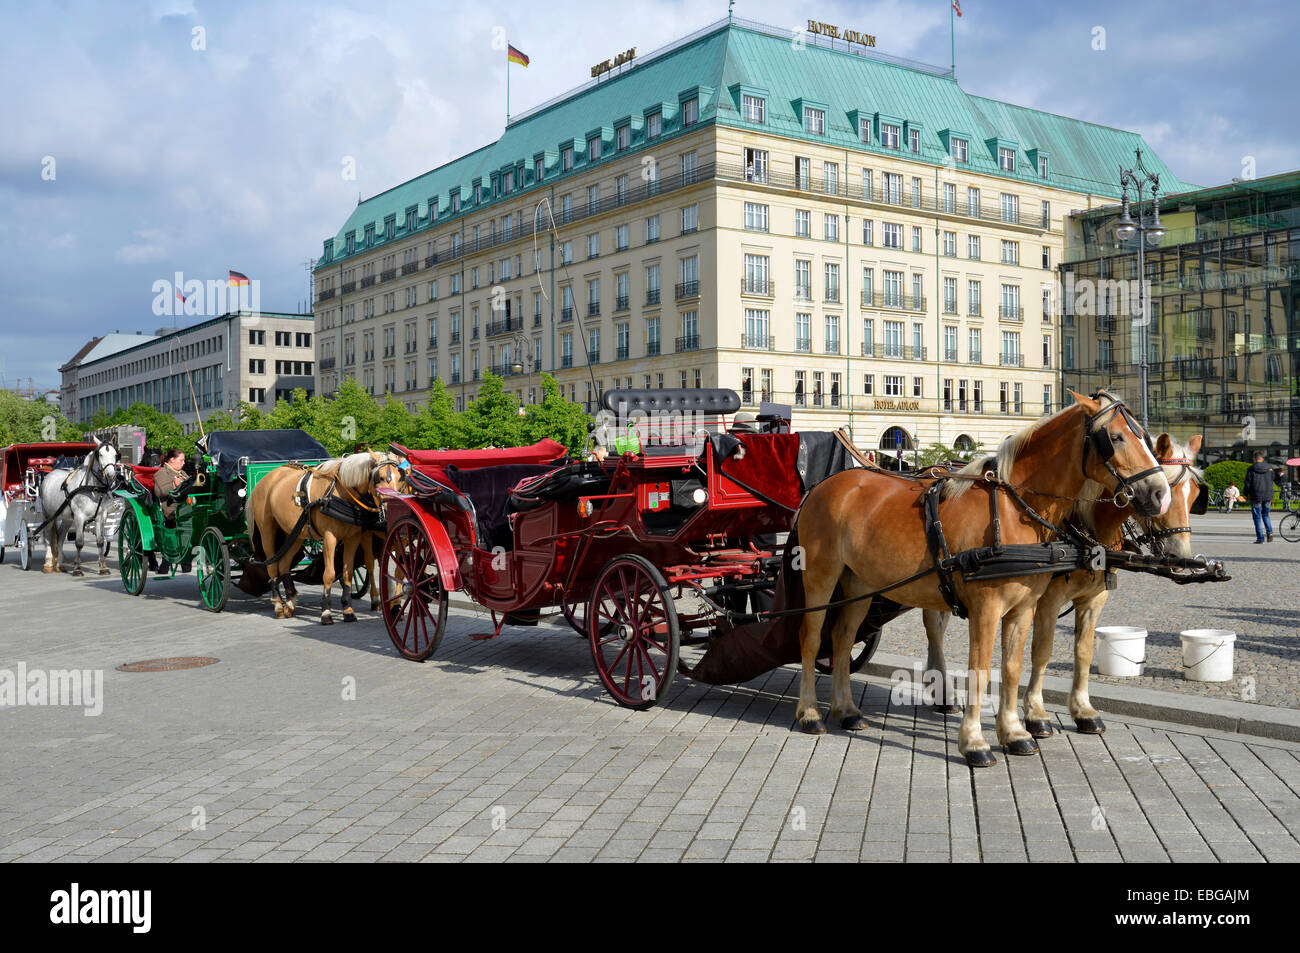 Horse-drawn Wagen für Touristen außerhalb des Hotel Adlon, Pariser Platz Platz, Berlin, Berlin, Deutschland Stockfoto